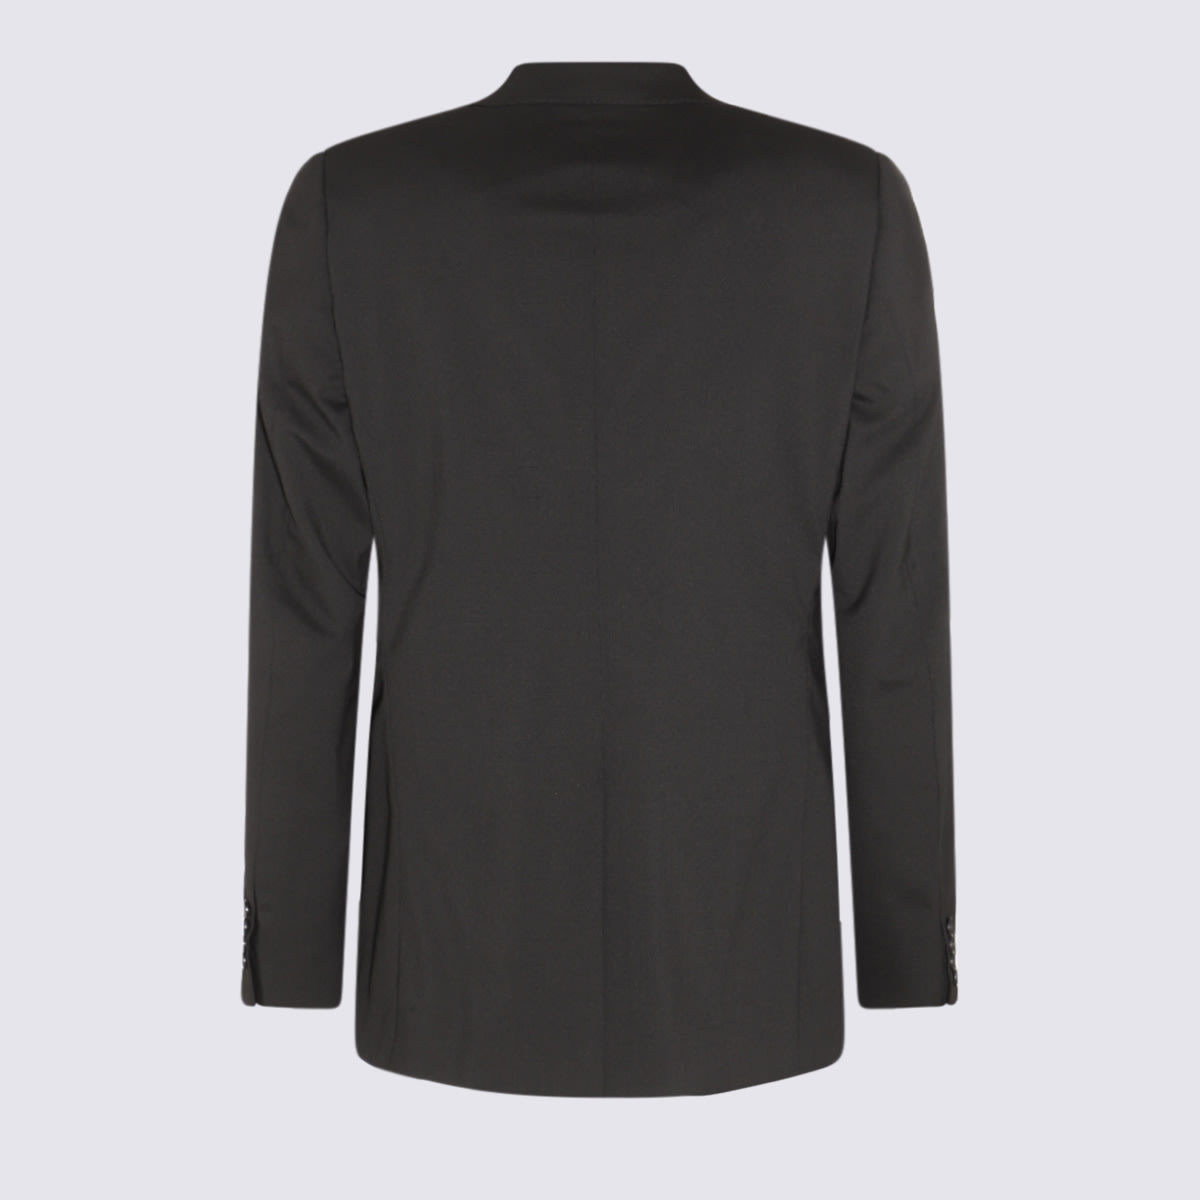 Shop Dolce & Gabbana Black Wool Two Pieces Suit